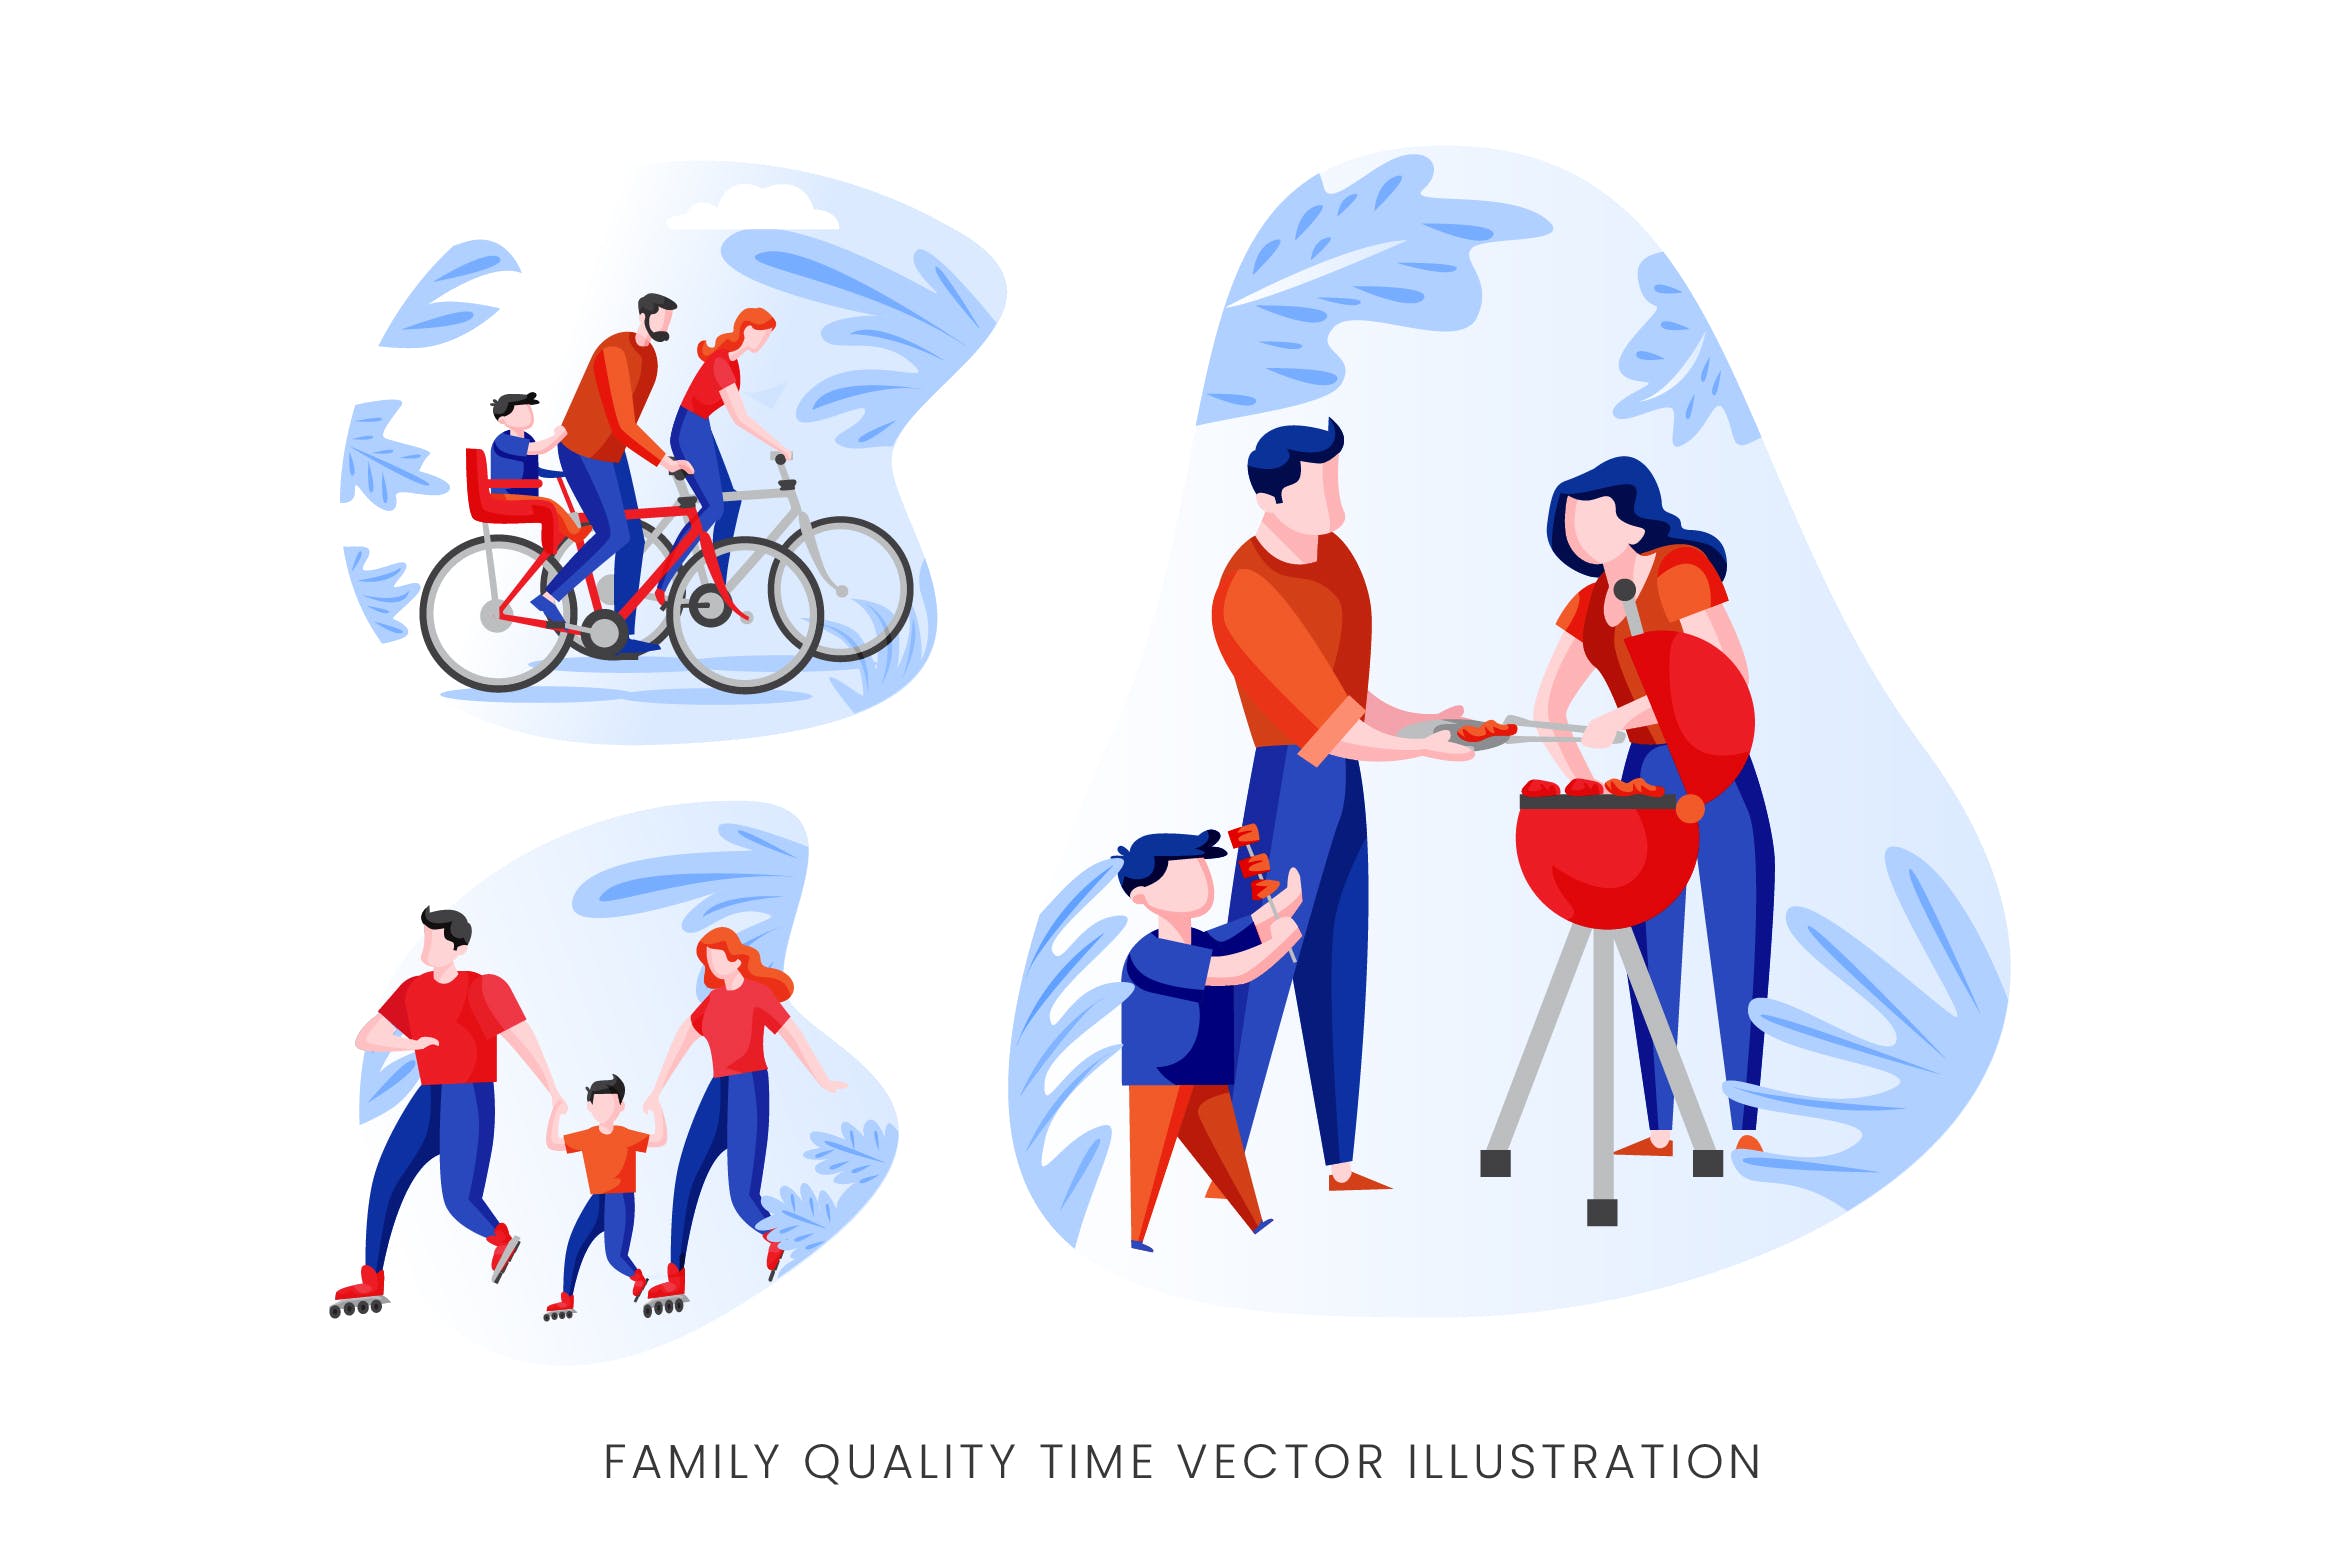 亲子活动时光矢量手绘素材库精选设计素材 Family Quality Time Vector Character Set插图